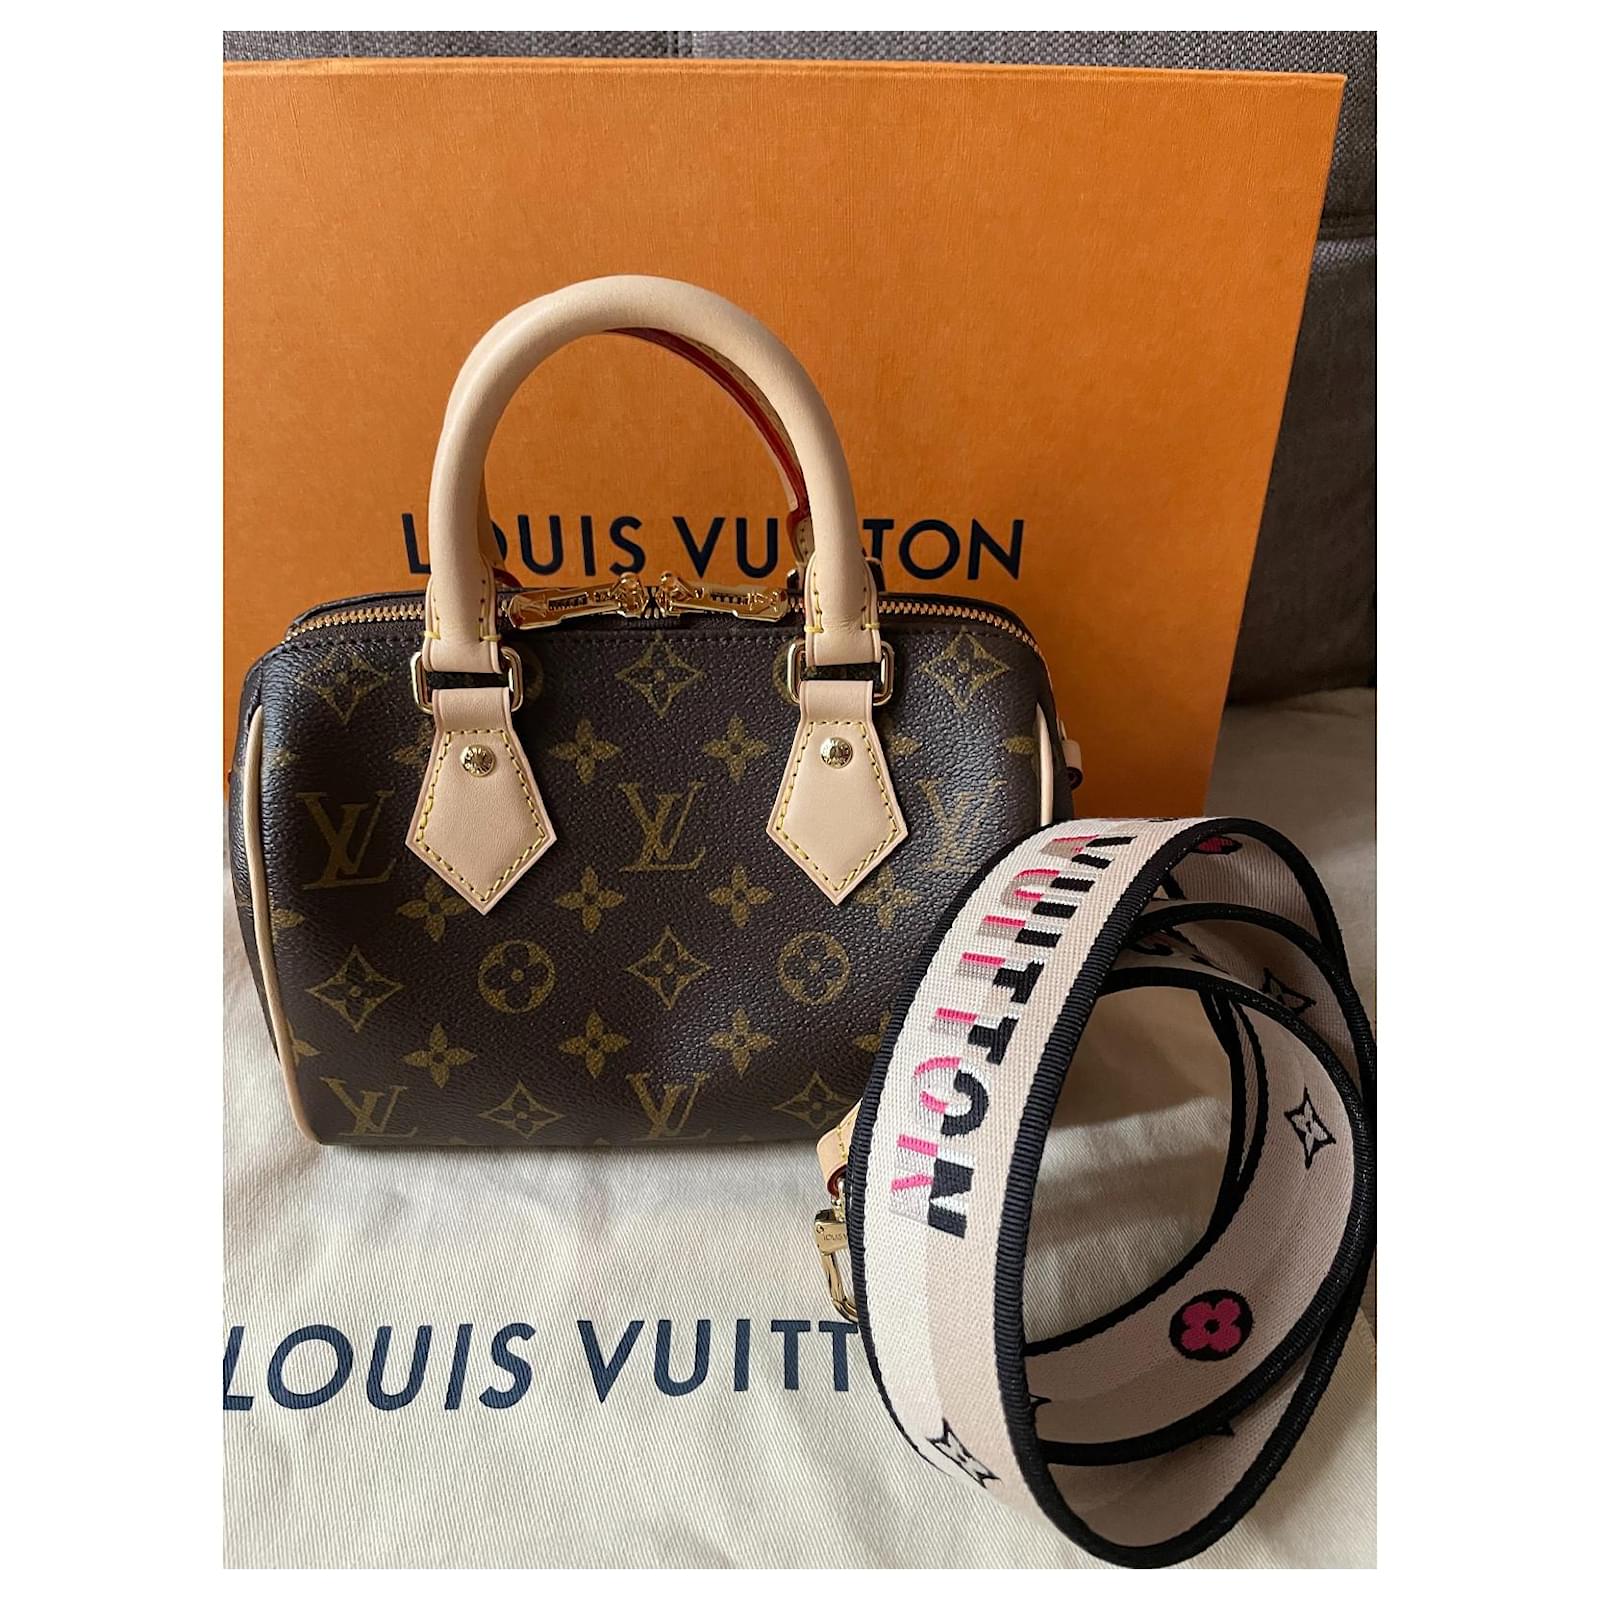 Louis Vuitton NÉONOÉ MM - sold out in stores